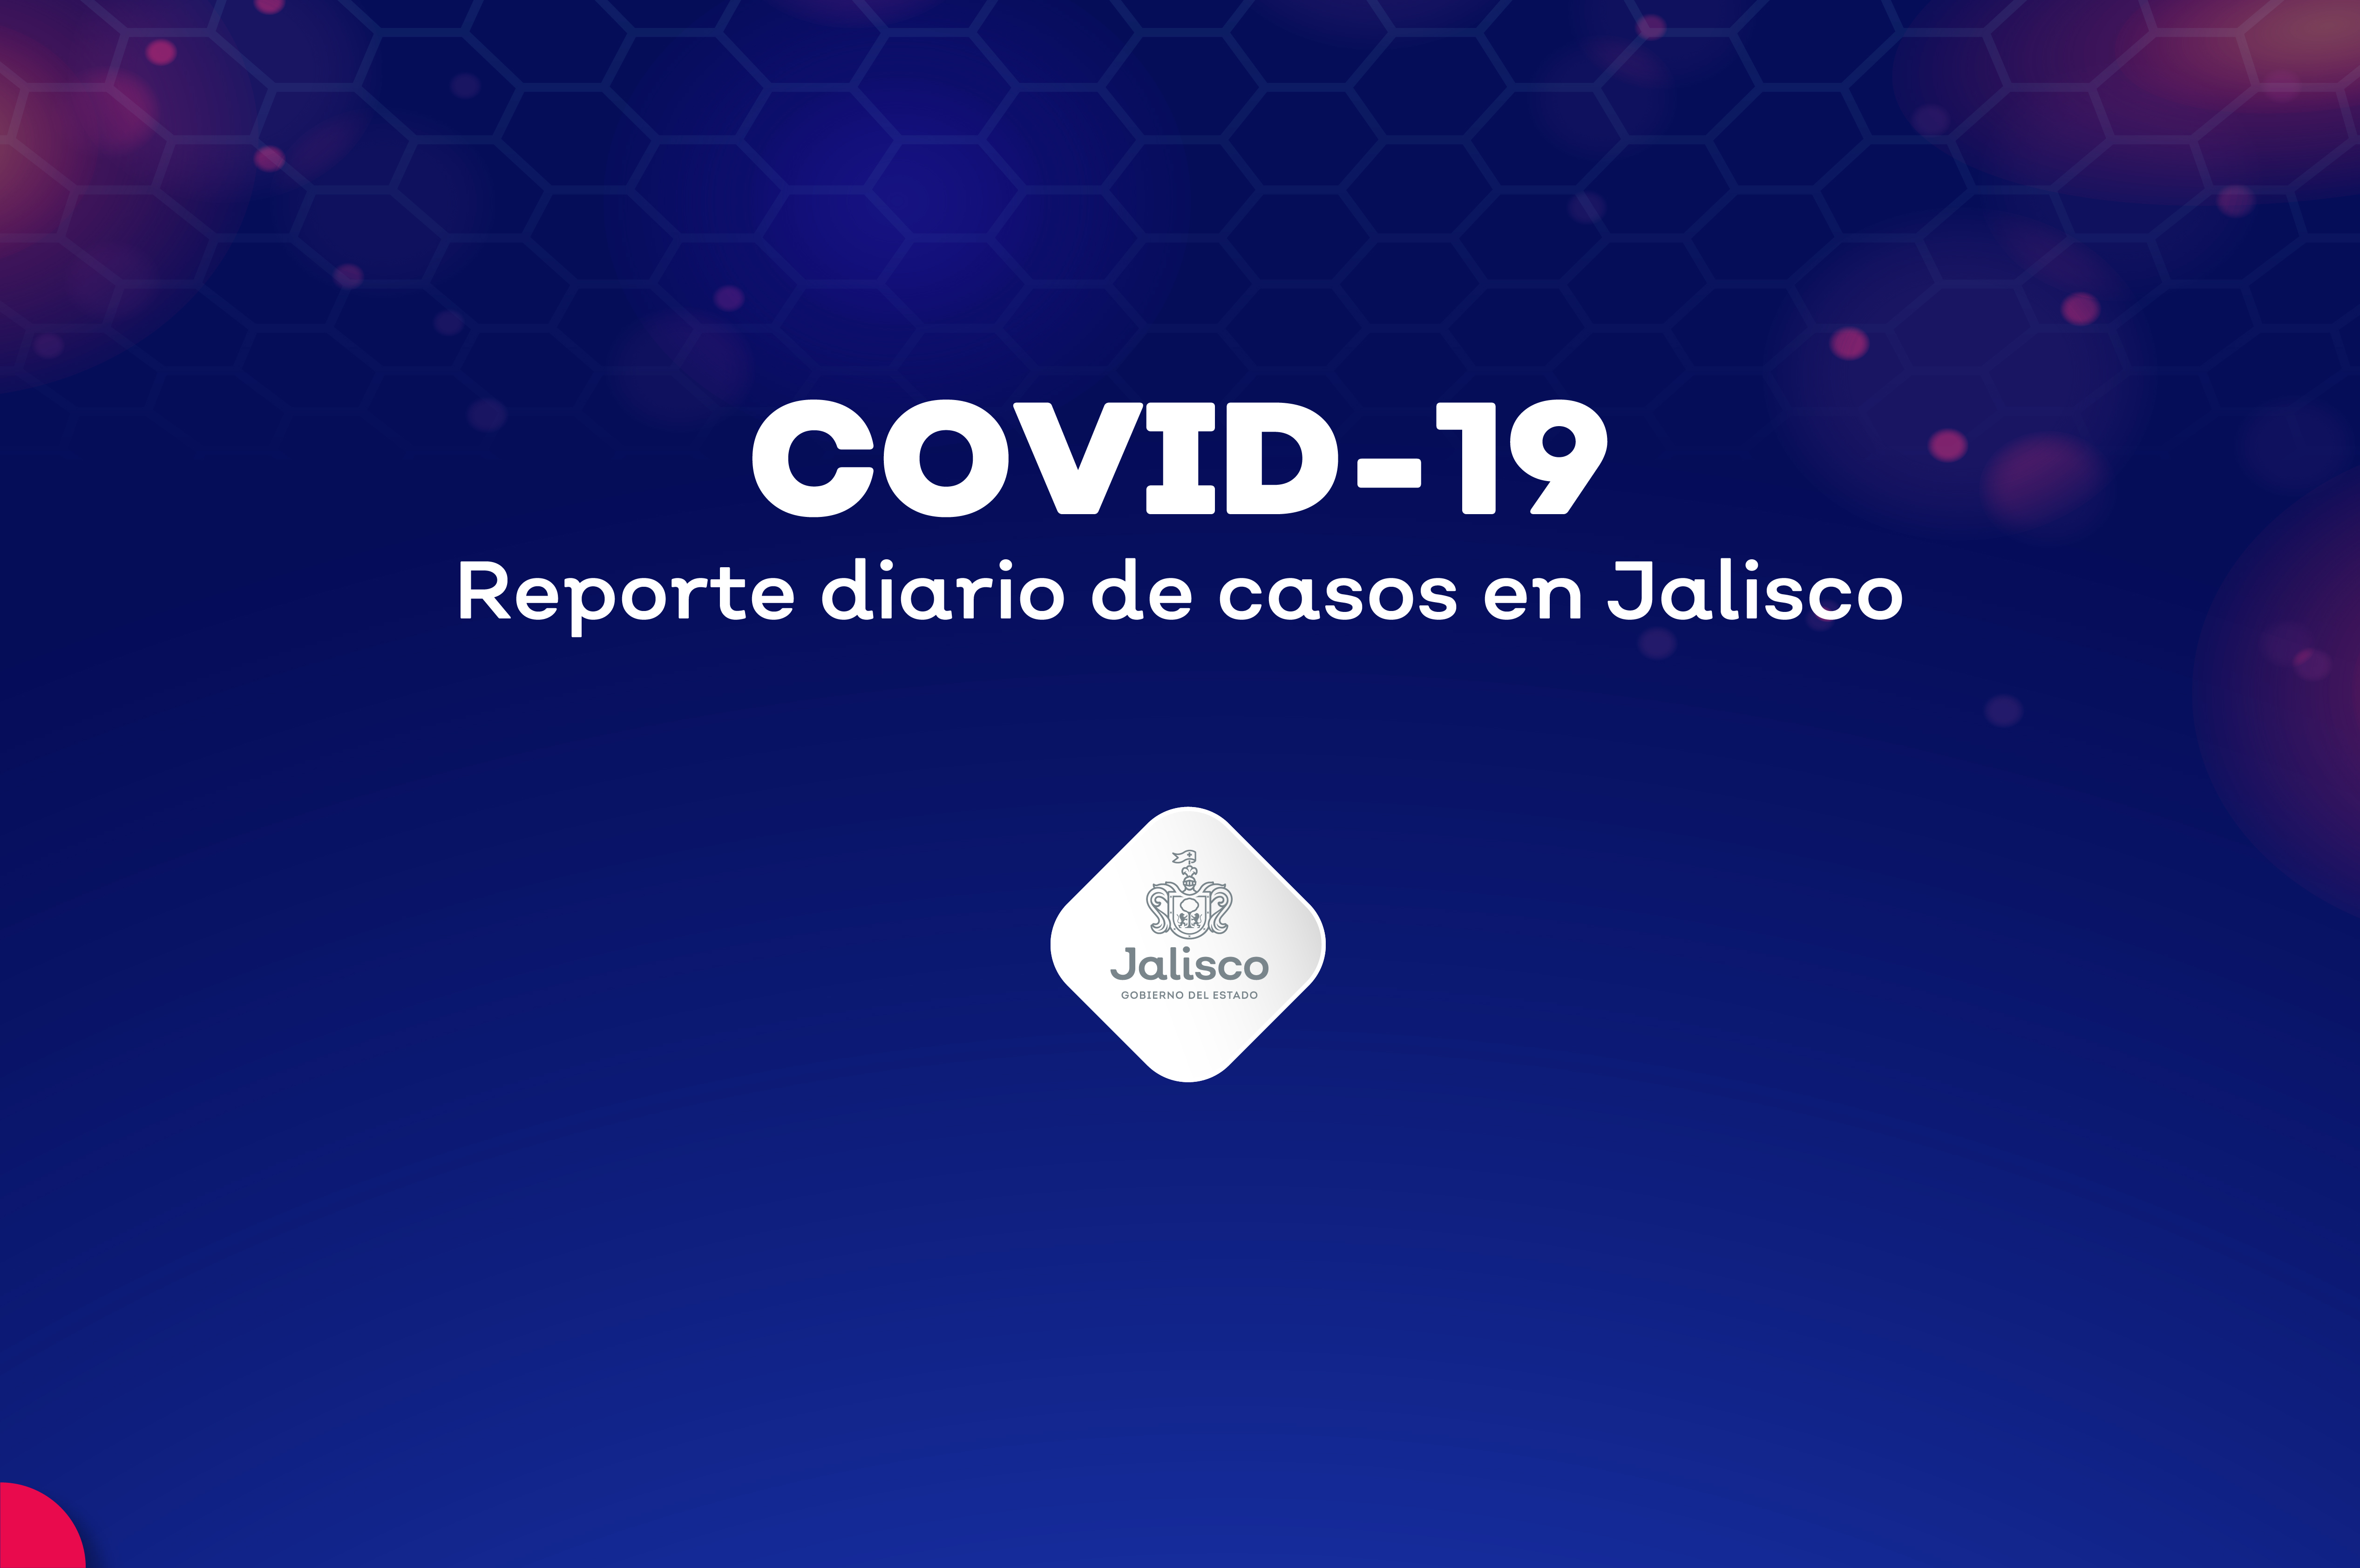 Tlajomulco y El Salto llegan al 30% de segunda vacuna contra COVID-19  aplicada en adultos mayores | Secretaría de Salud